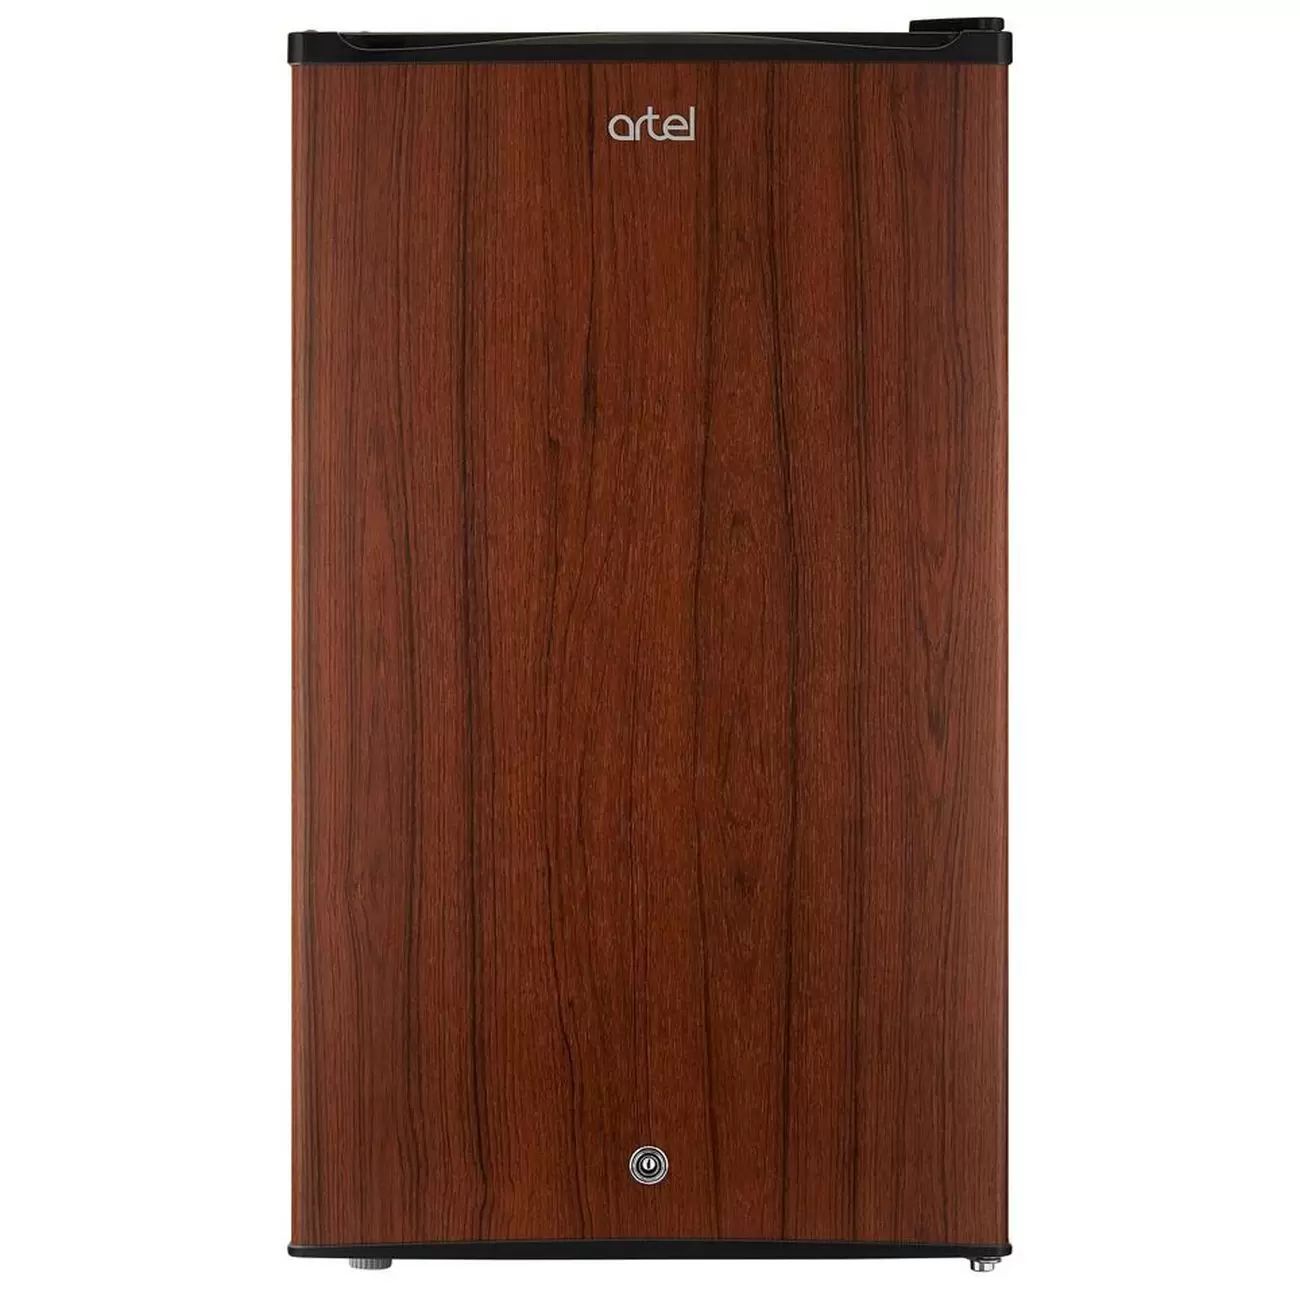 Холодильник Artel HS-117 RN коричневый холодильник tesler rc 95 коричневый